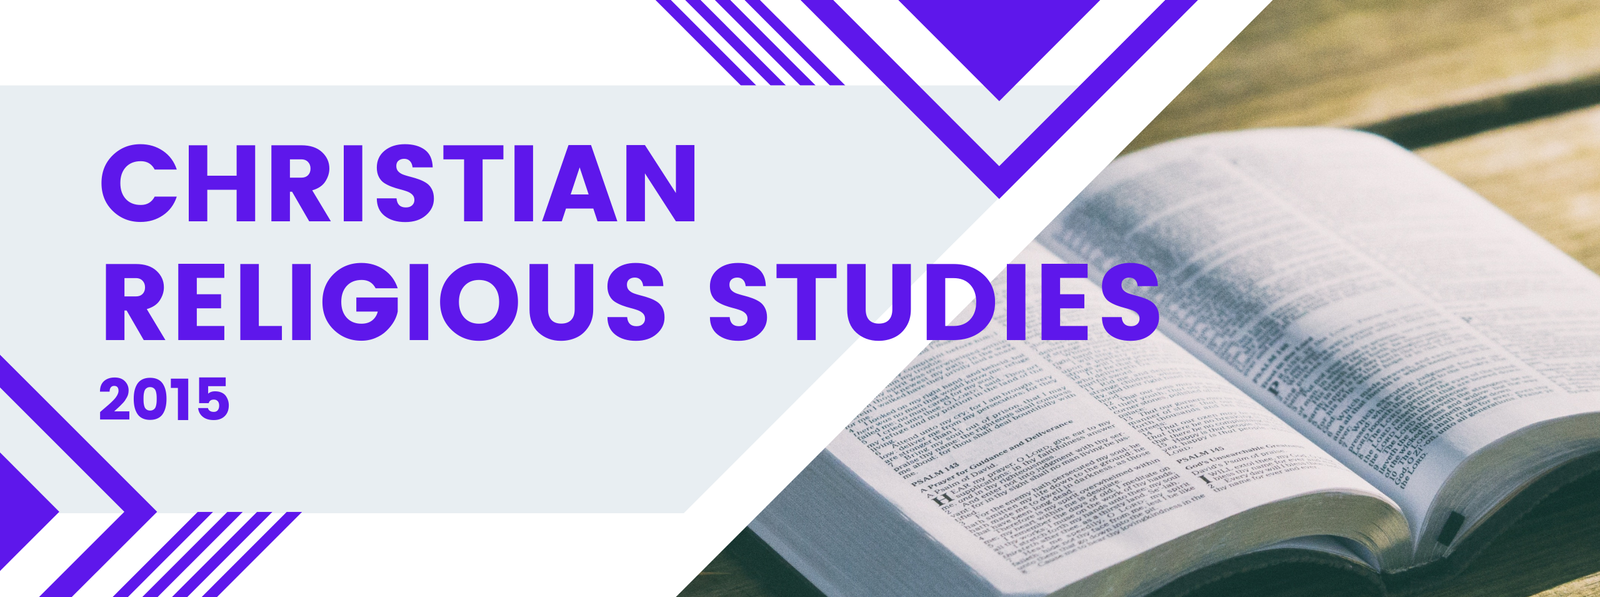 Christian Religious Studies - 2015